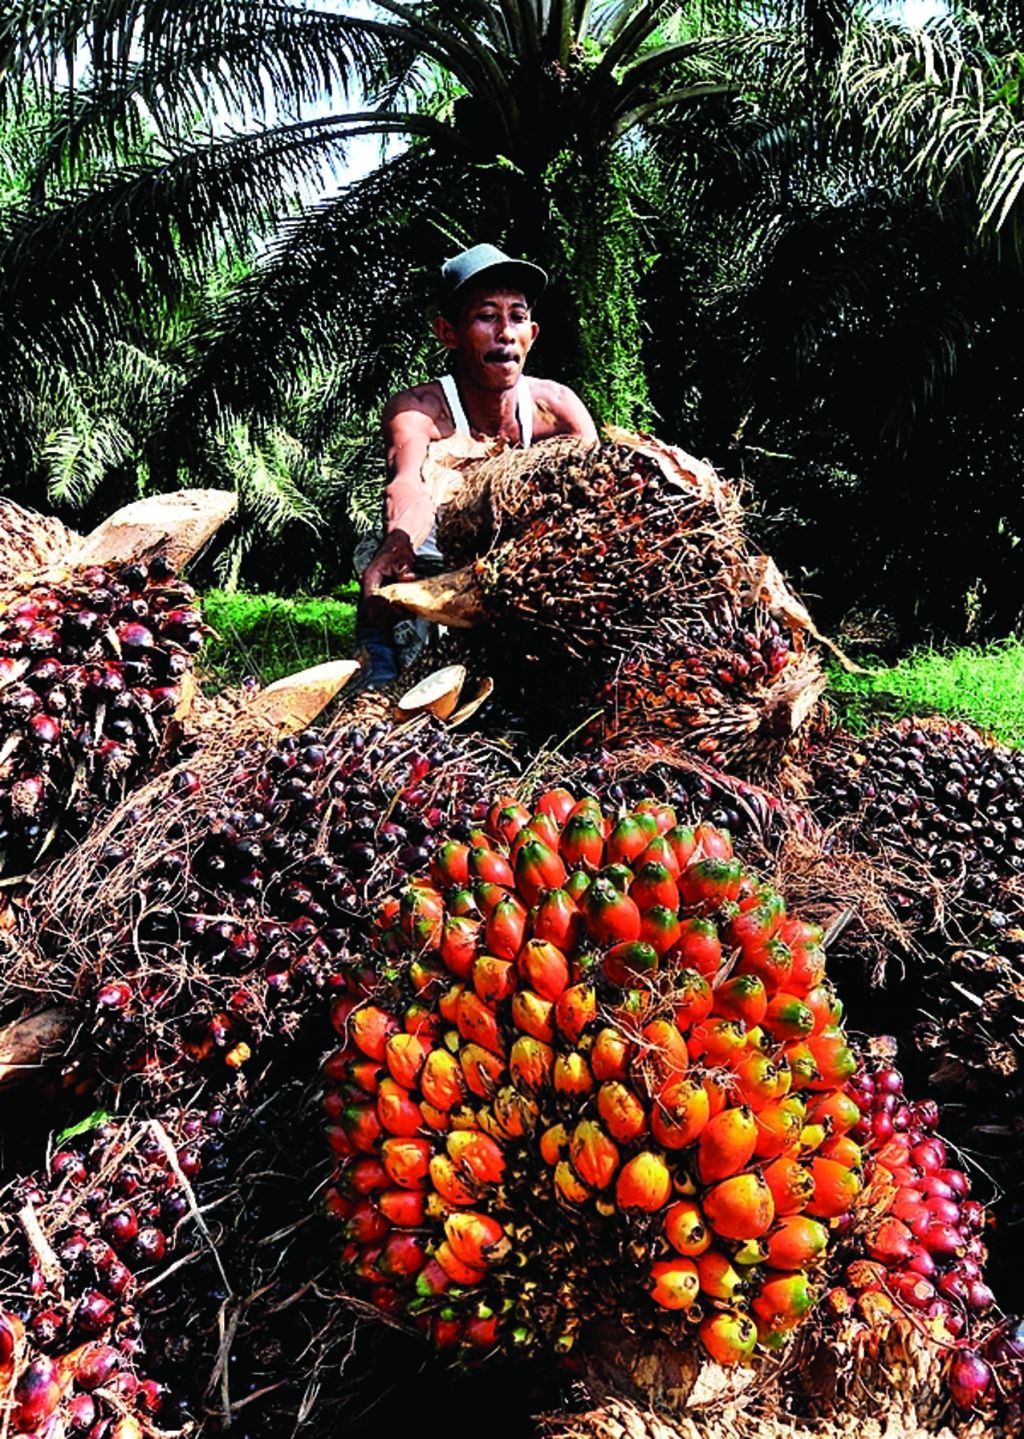 Petani menata tandan buah segar kelapa sawit yang baru mereka panen di Desa Paku, Kecamatan galang, Kabupaten Deli Serdang, Sumatera Utara, Senin (10/9/2012).